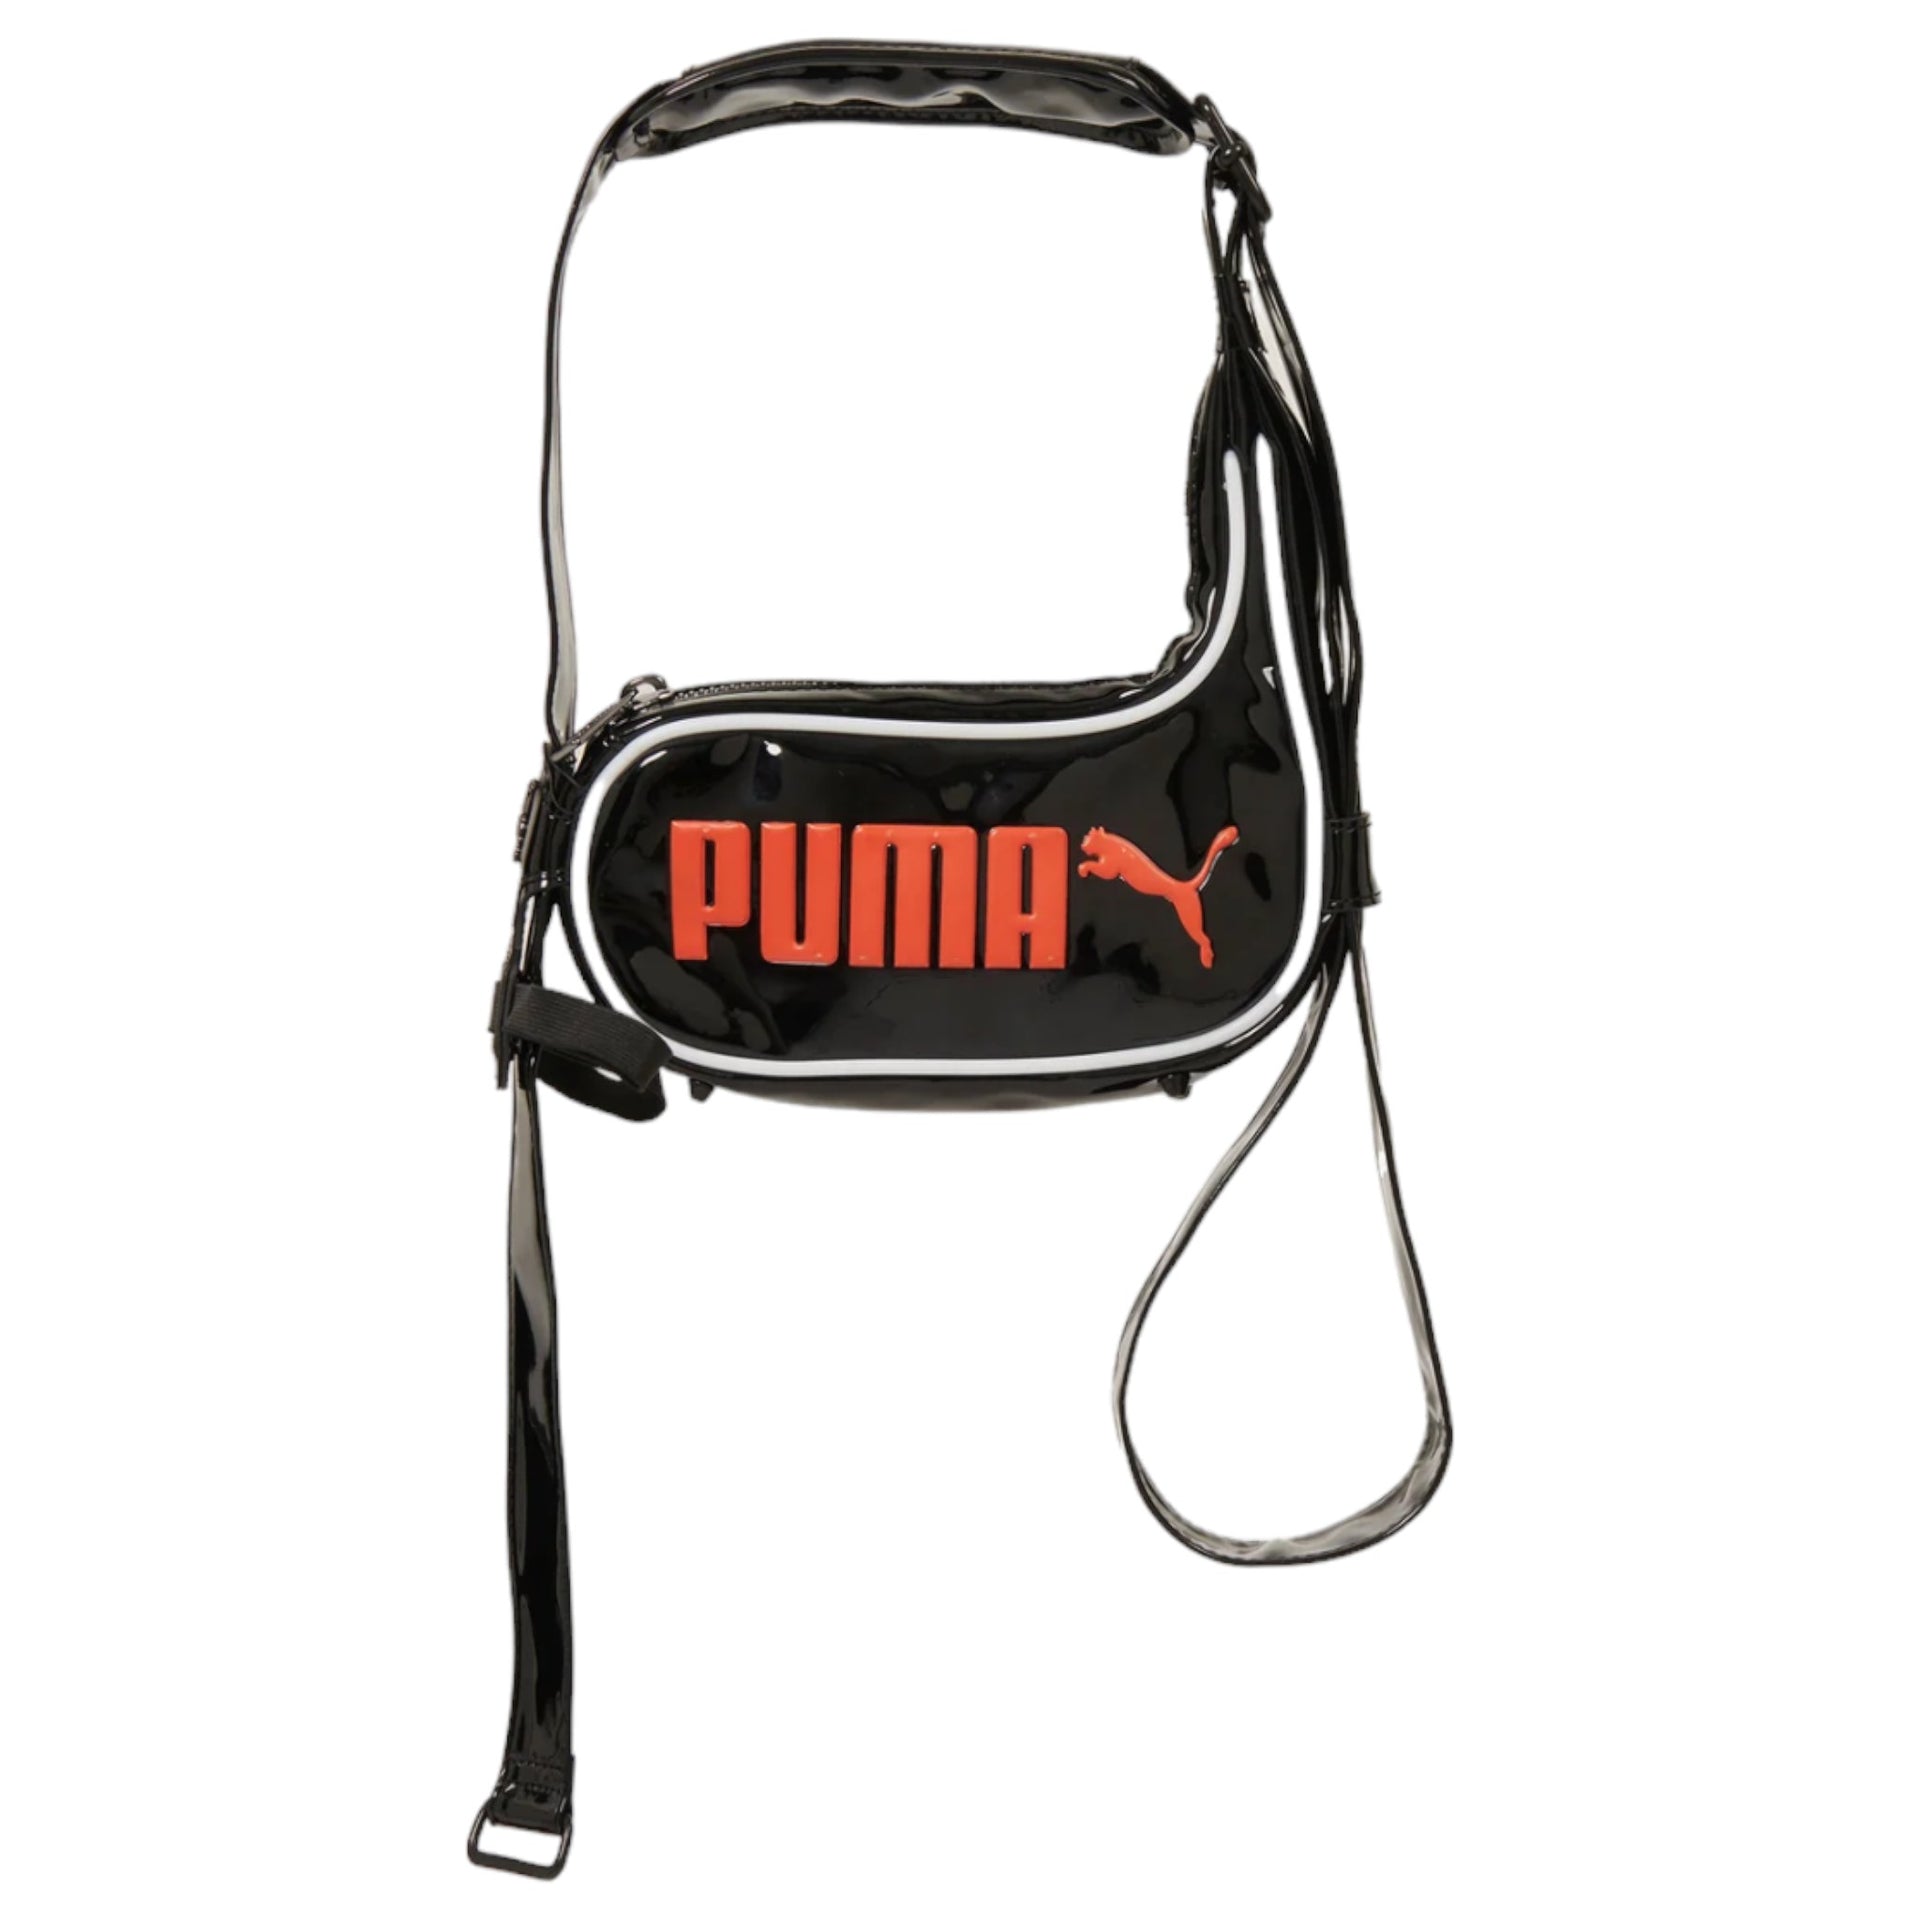 PUMA x OTTOLINGER SMALL BAG / PUBLCK